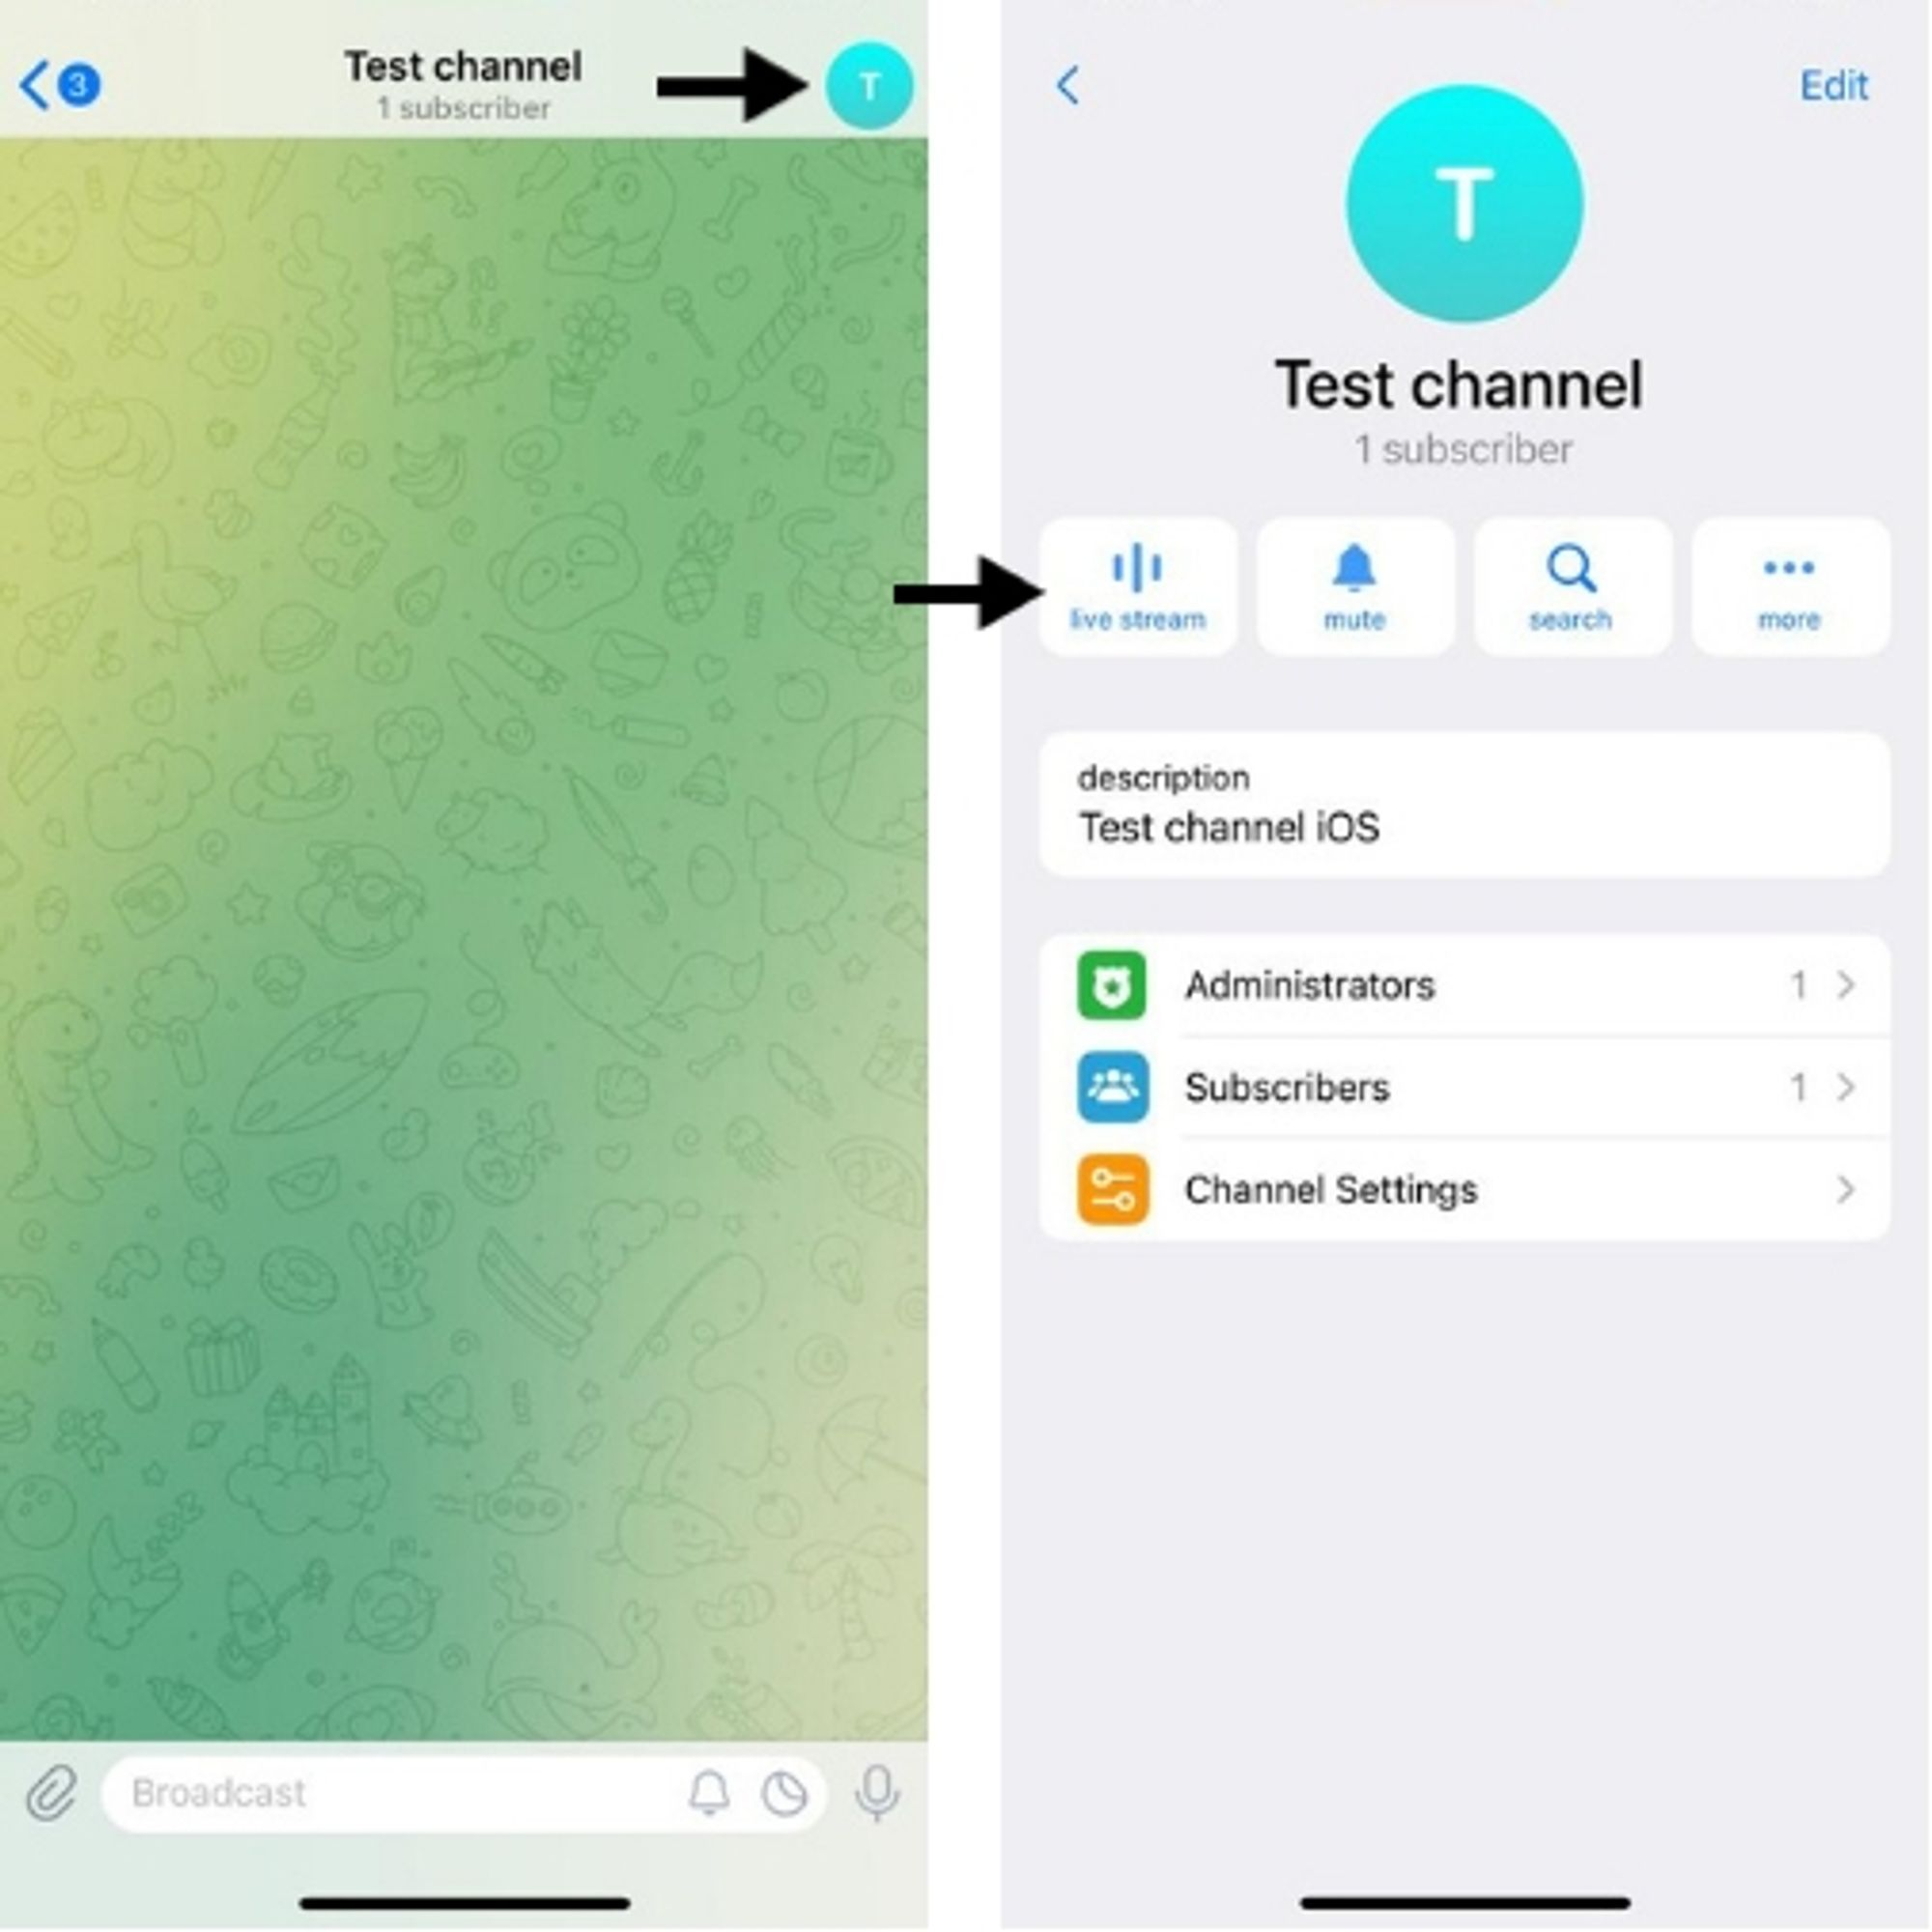 Starting a Telegram stream in iOS